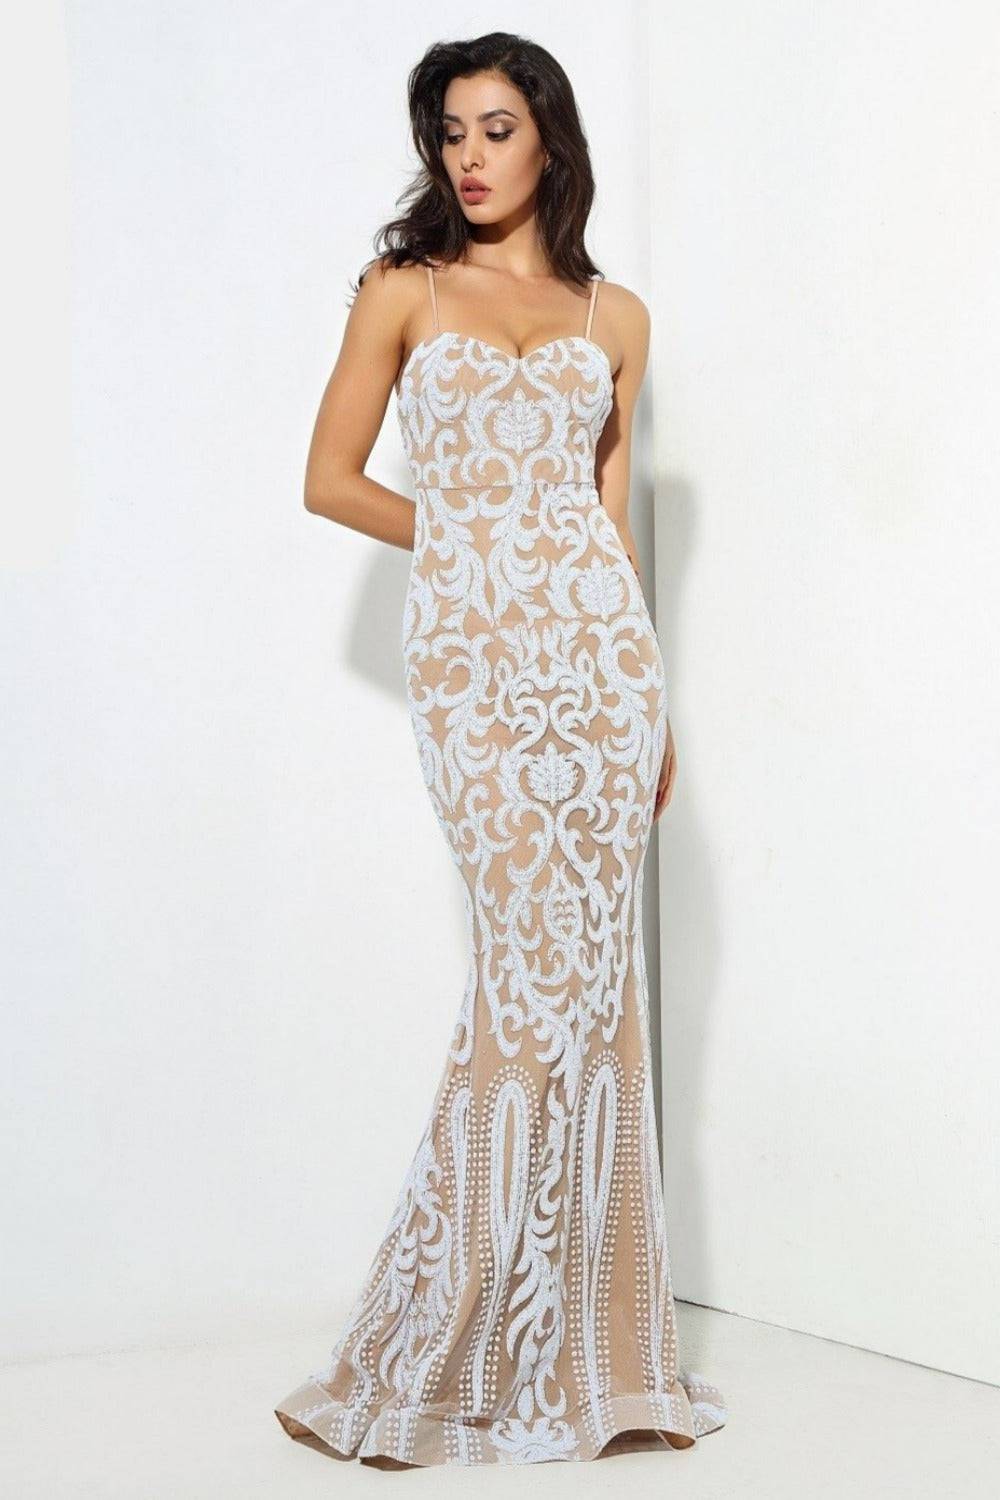 Sophia White Bodycon Maxi Dress - TGC Boutique - White Wedding Dress